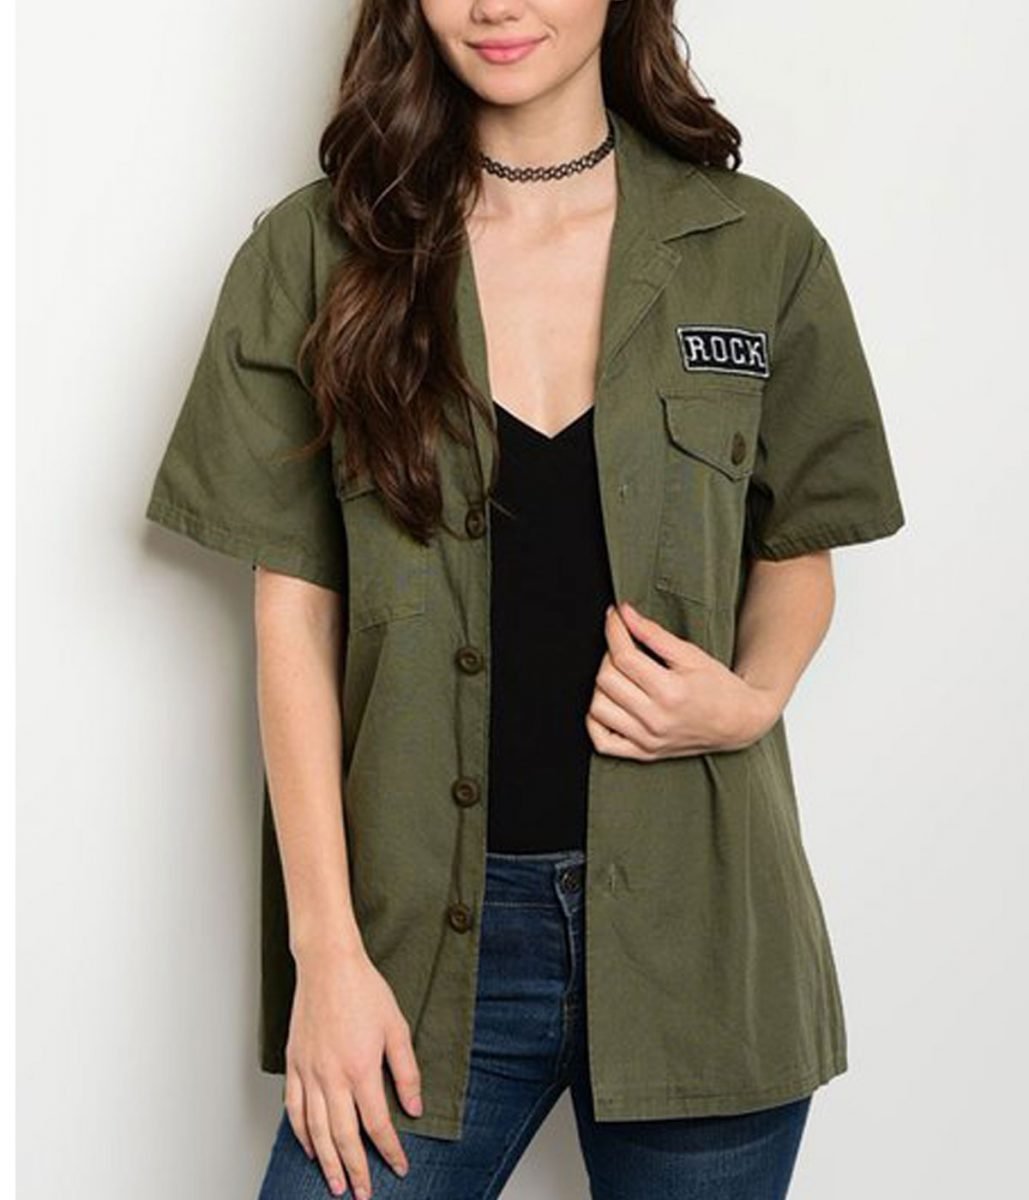 Army Green Rock Short Sleeve Women's Jacket - Films Jackets